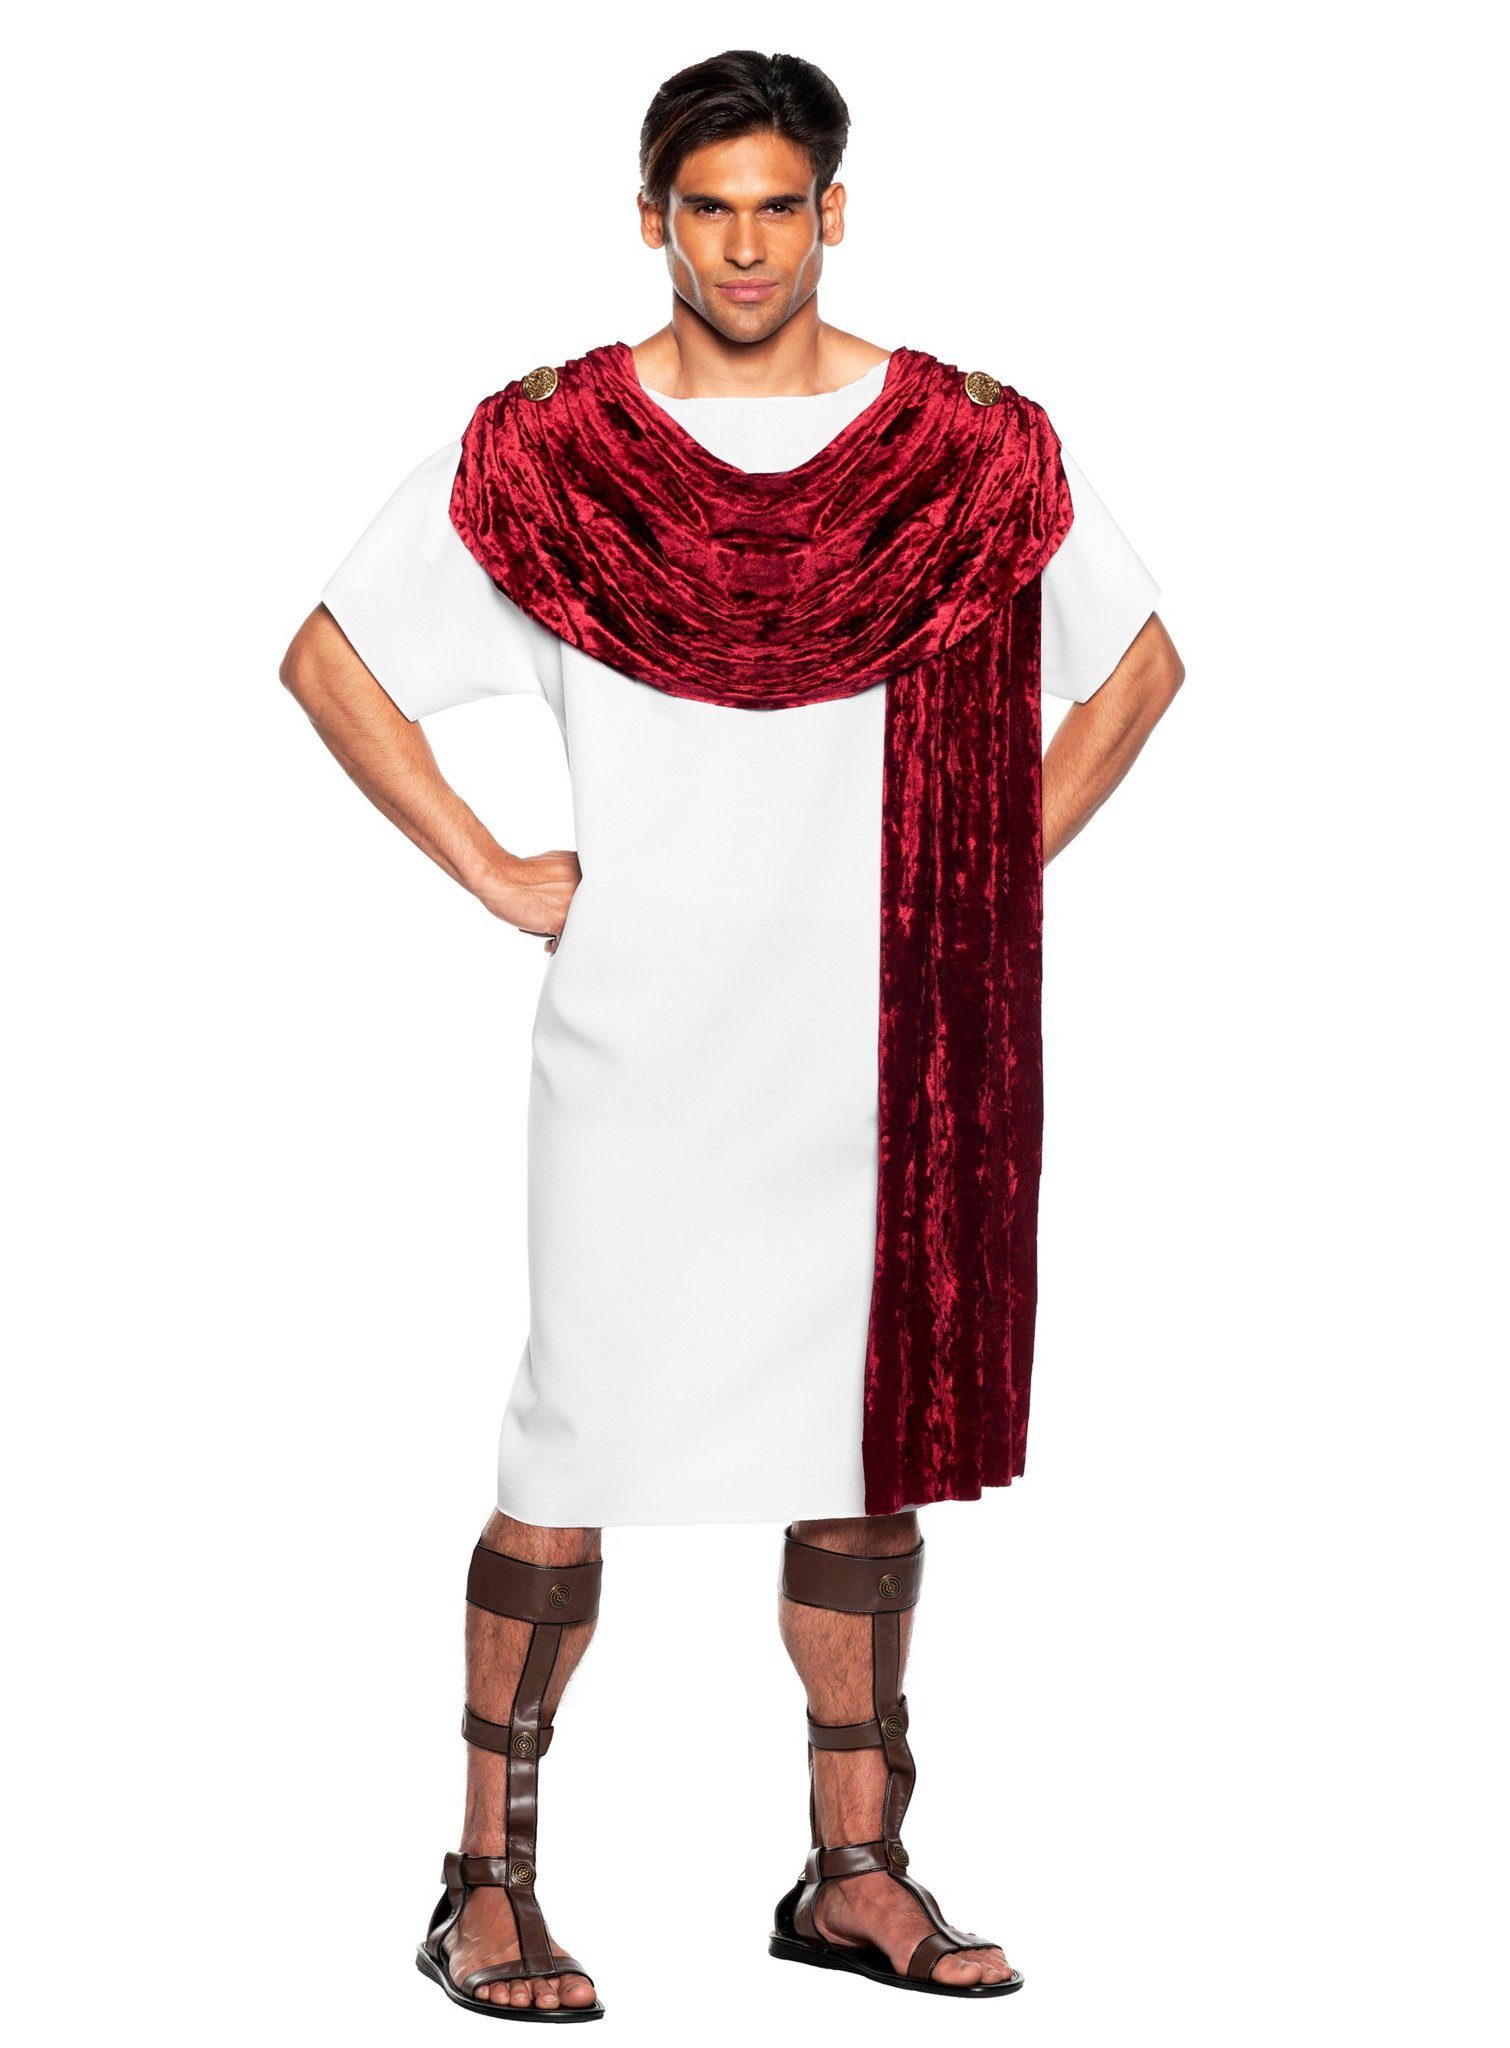 Underwraps Kostüm Römischer Senator Kostüm, Inb der Antike konnte man noch große Reden in knappen Klamotten schwi